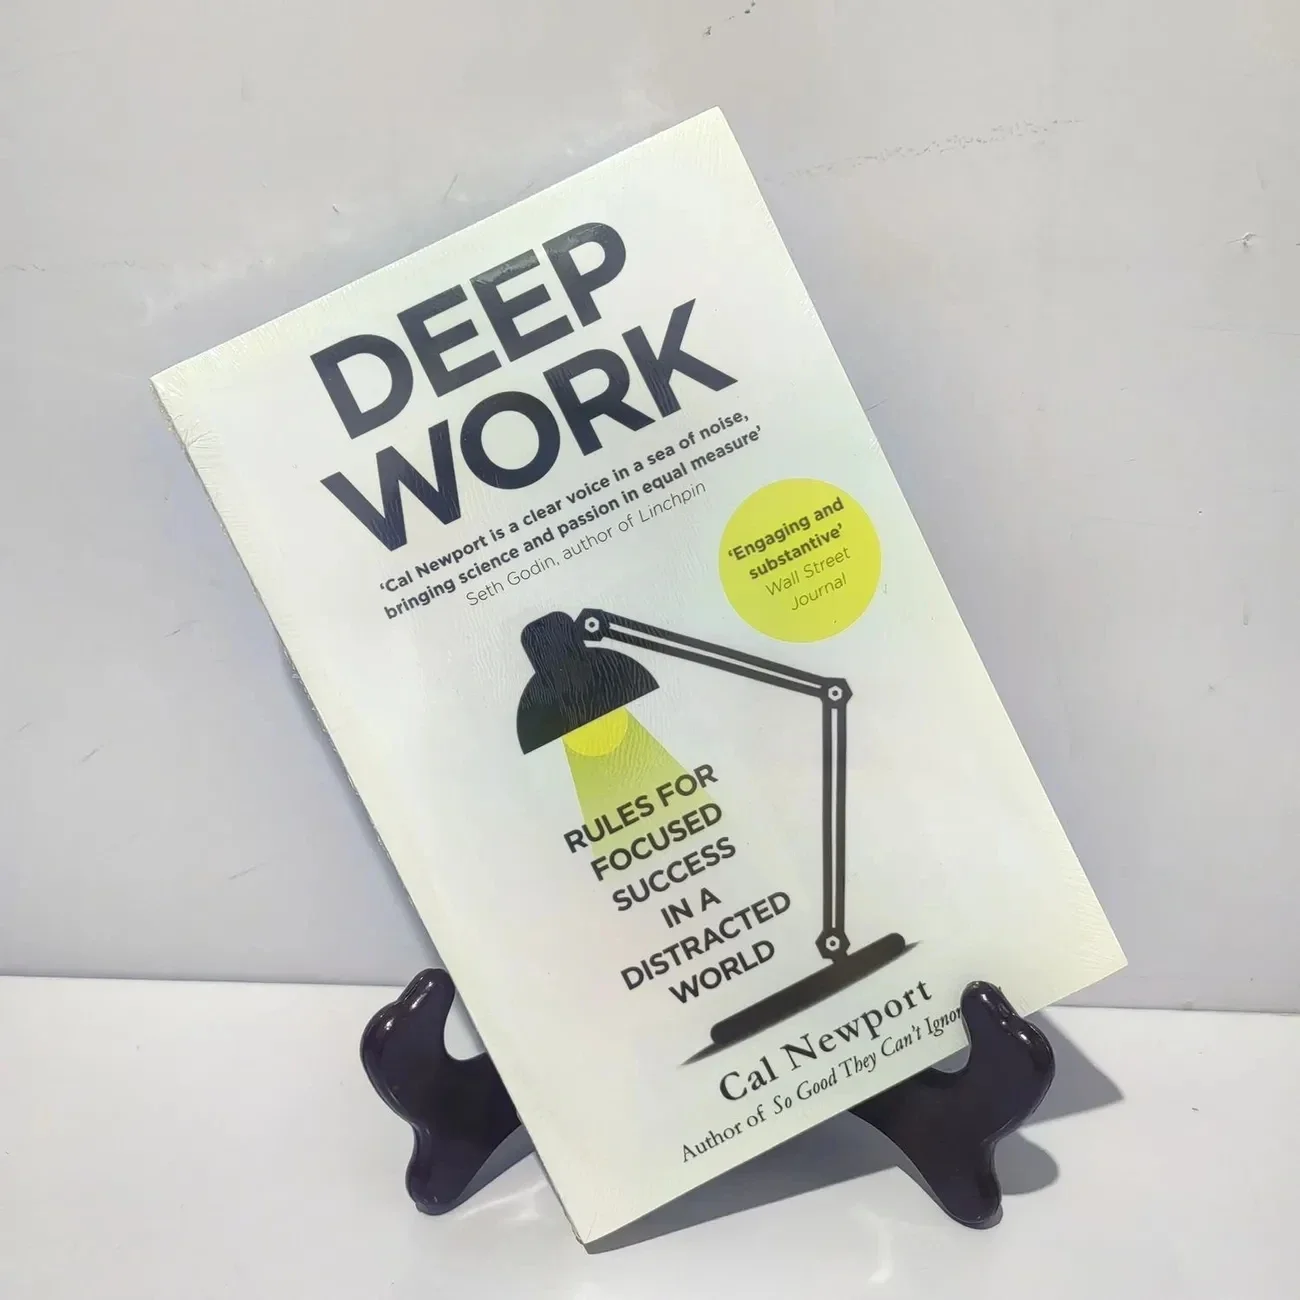 Глубокая работа: правила целенаправленного успеха в отвлеченном мире, Кэл Ньюпорт, Книга для самопомощи, Книги по английскому языку, библиотеки